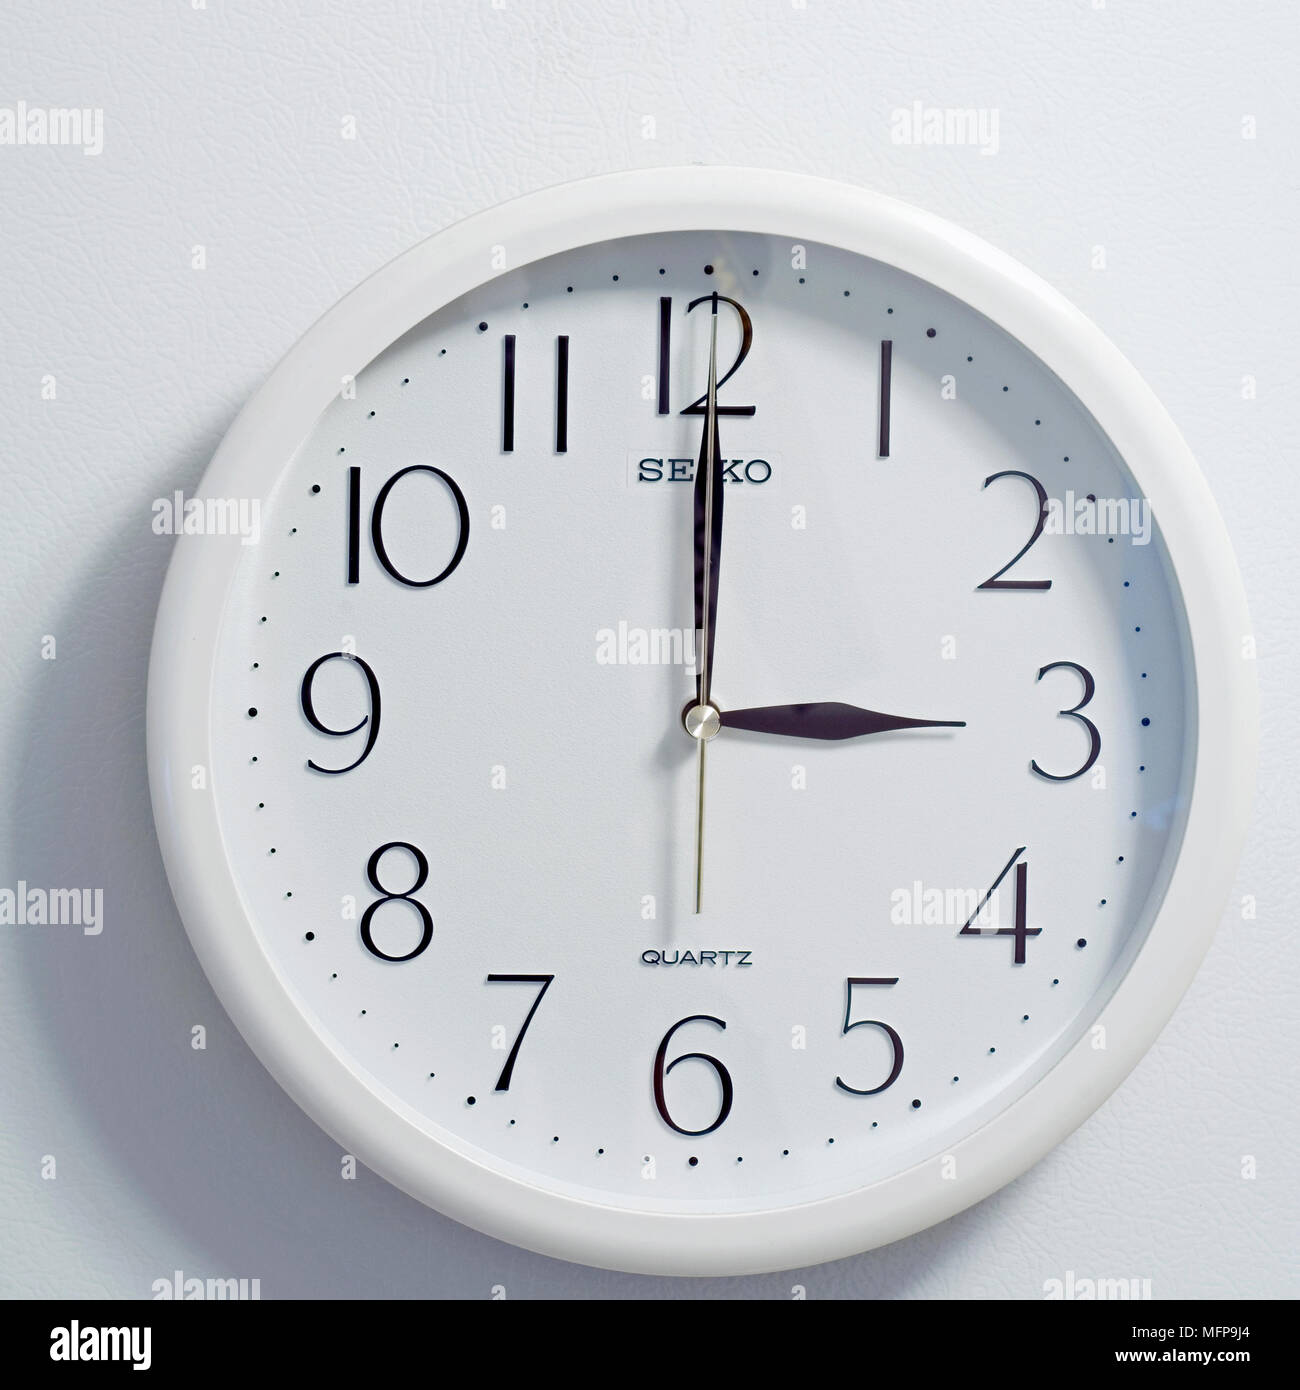 Nahaufnahme des Gesichts des modernen clock Stil, runde weiße und schwarze Zifferblatt zu der Zeit drei Uhr auf weißem Hintergrund Stockfoto